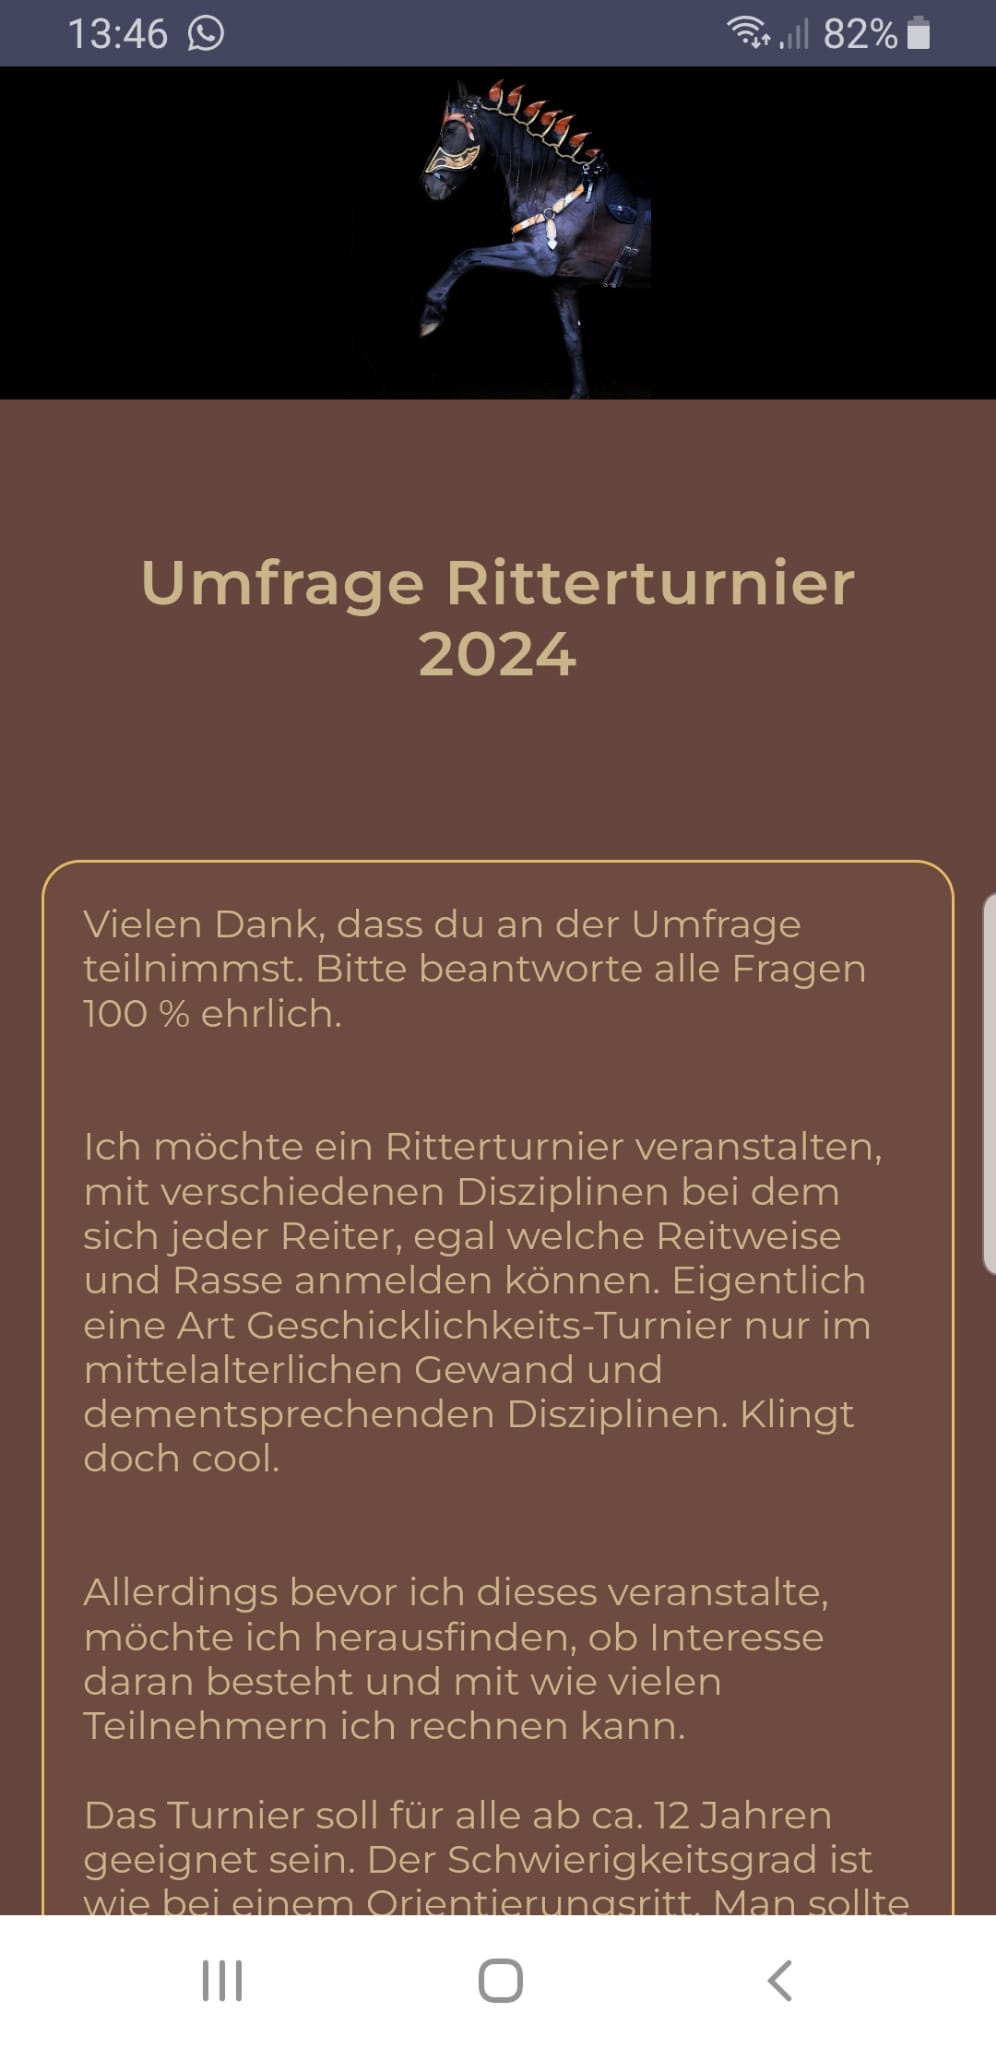 Umfrage_Ritterturnier_2024